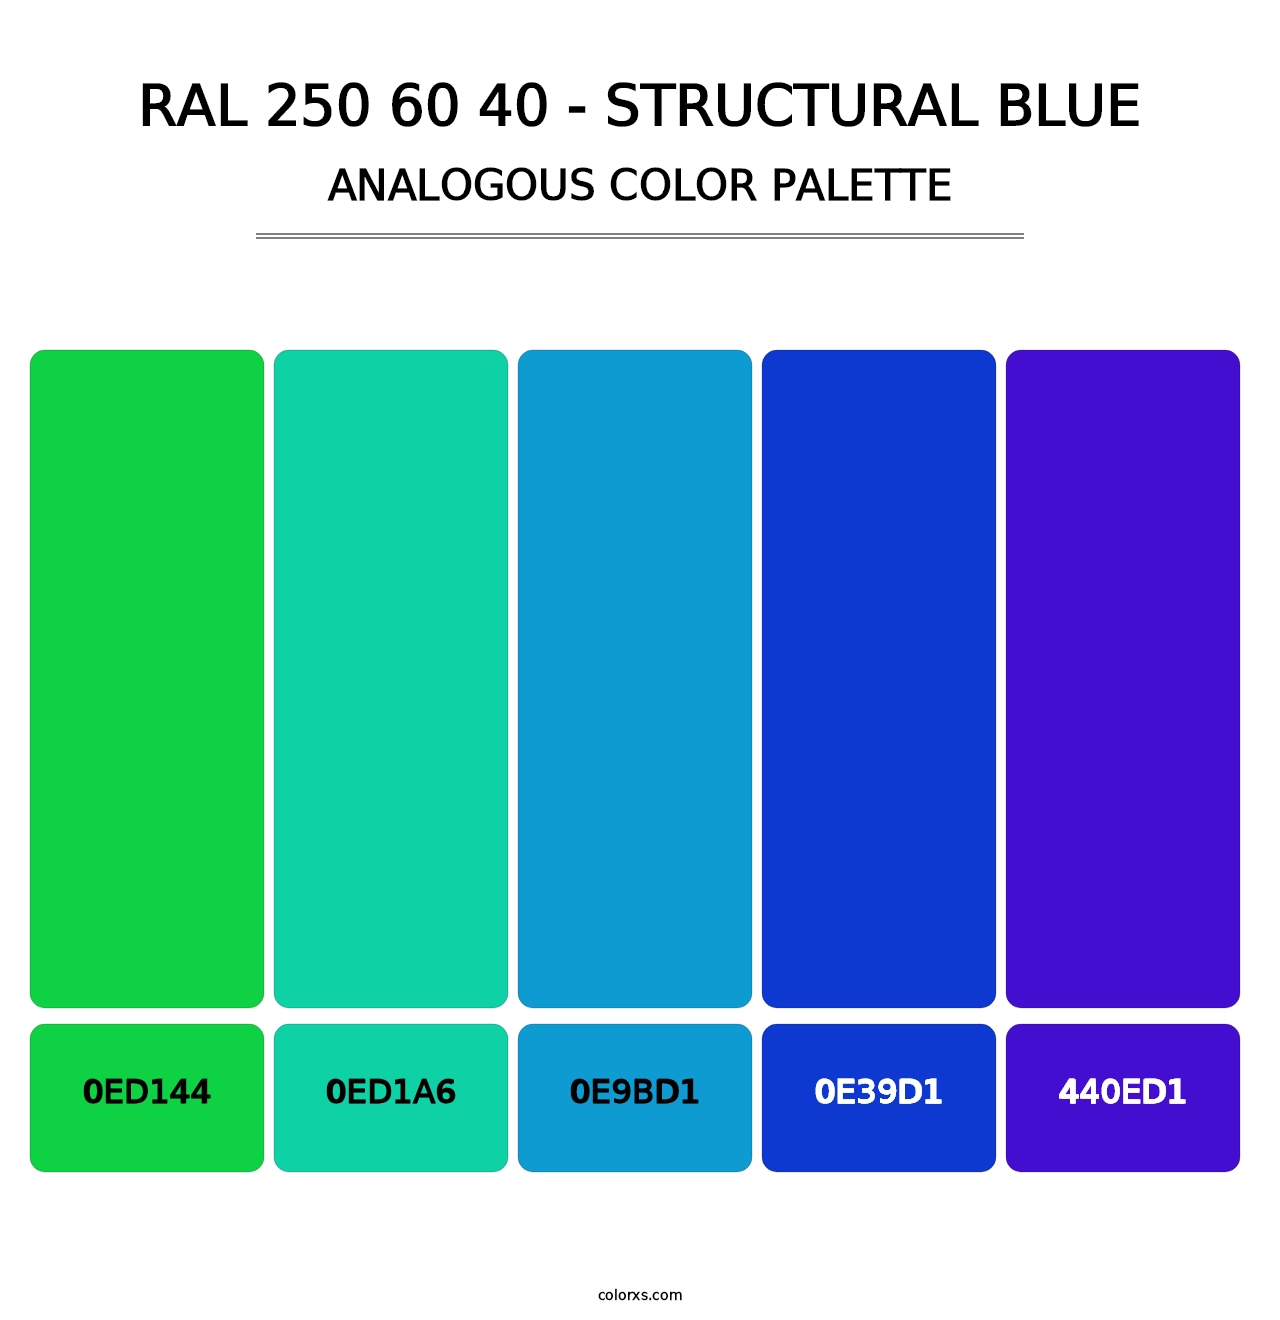 RAL 250 60 40 - Structural Blue - Analogous Color Palette